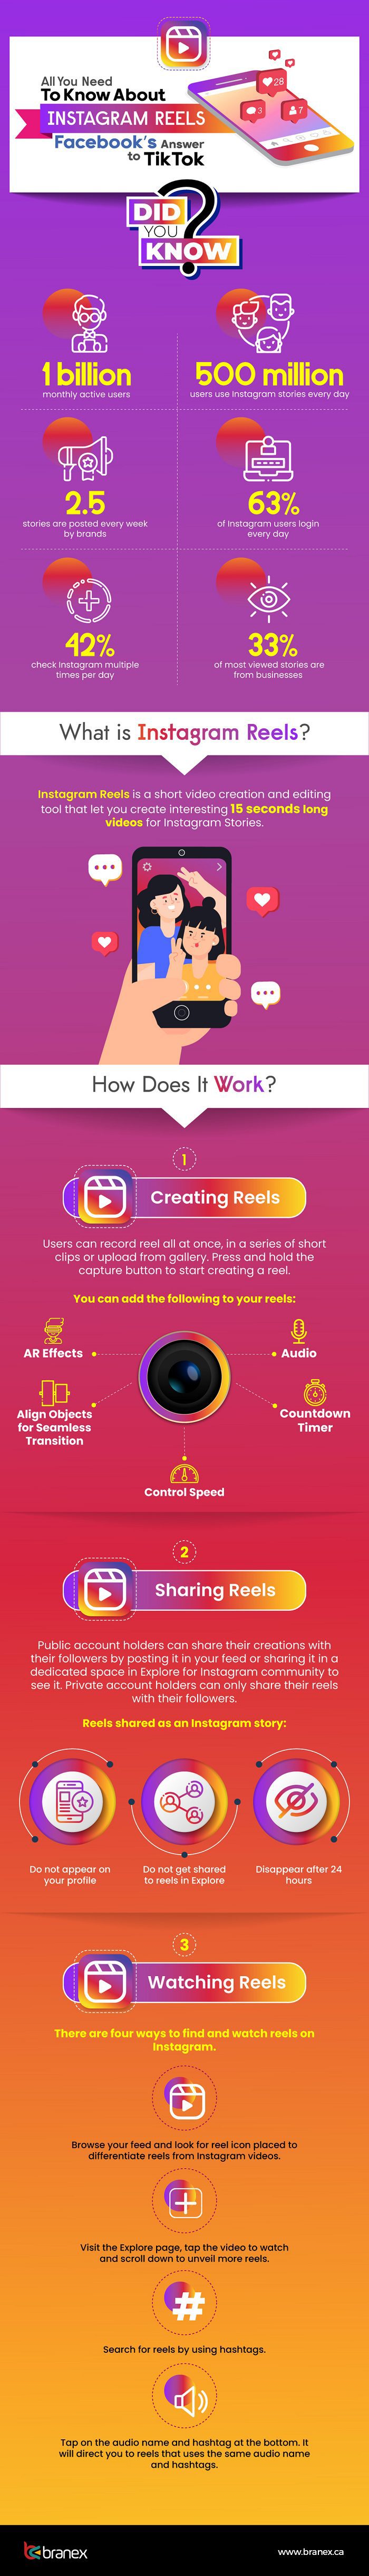 Instagram reels infographic